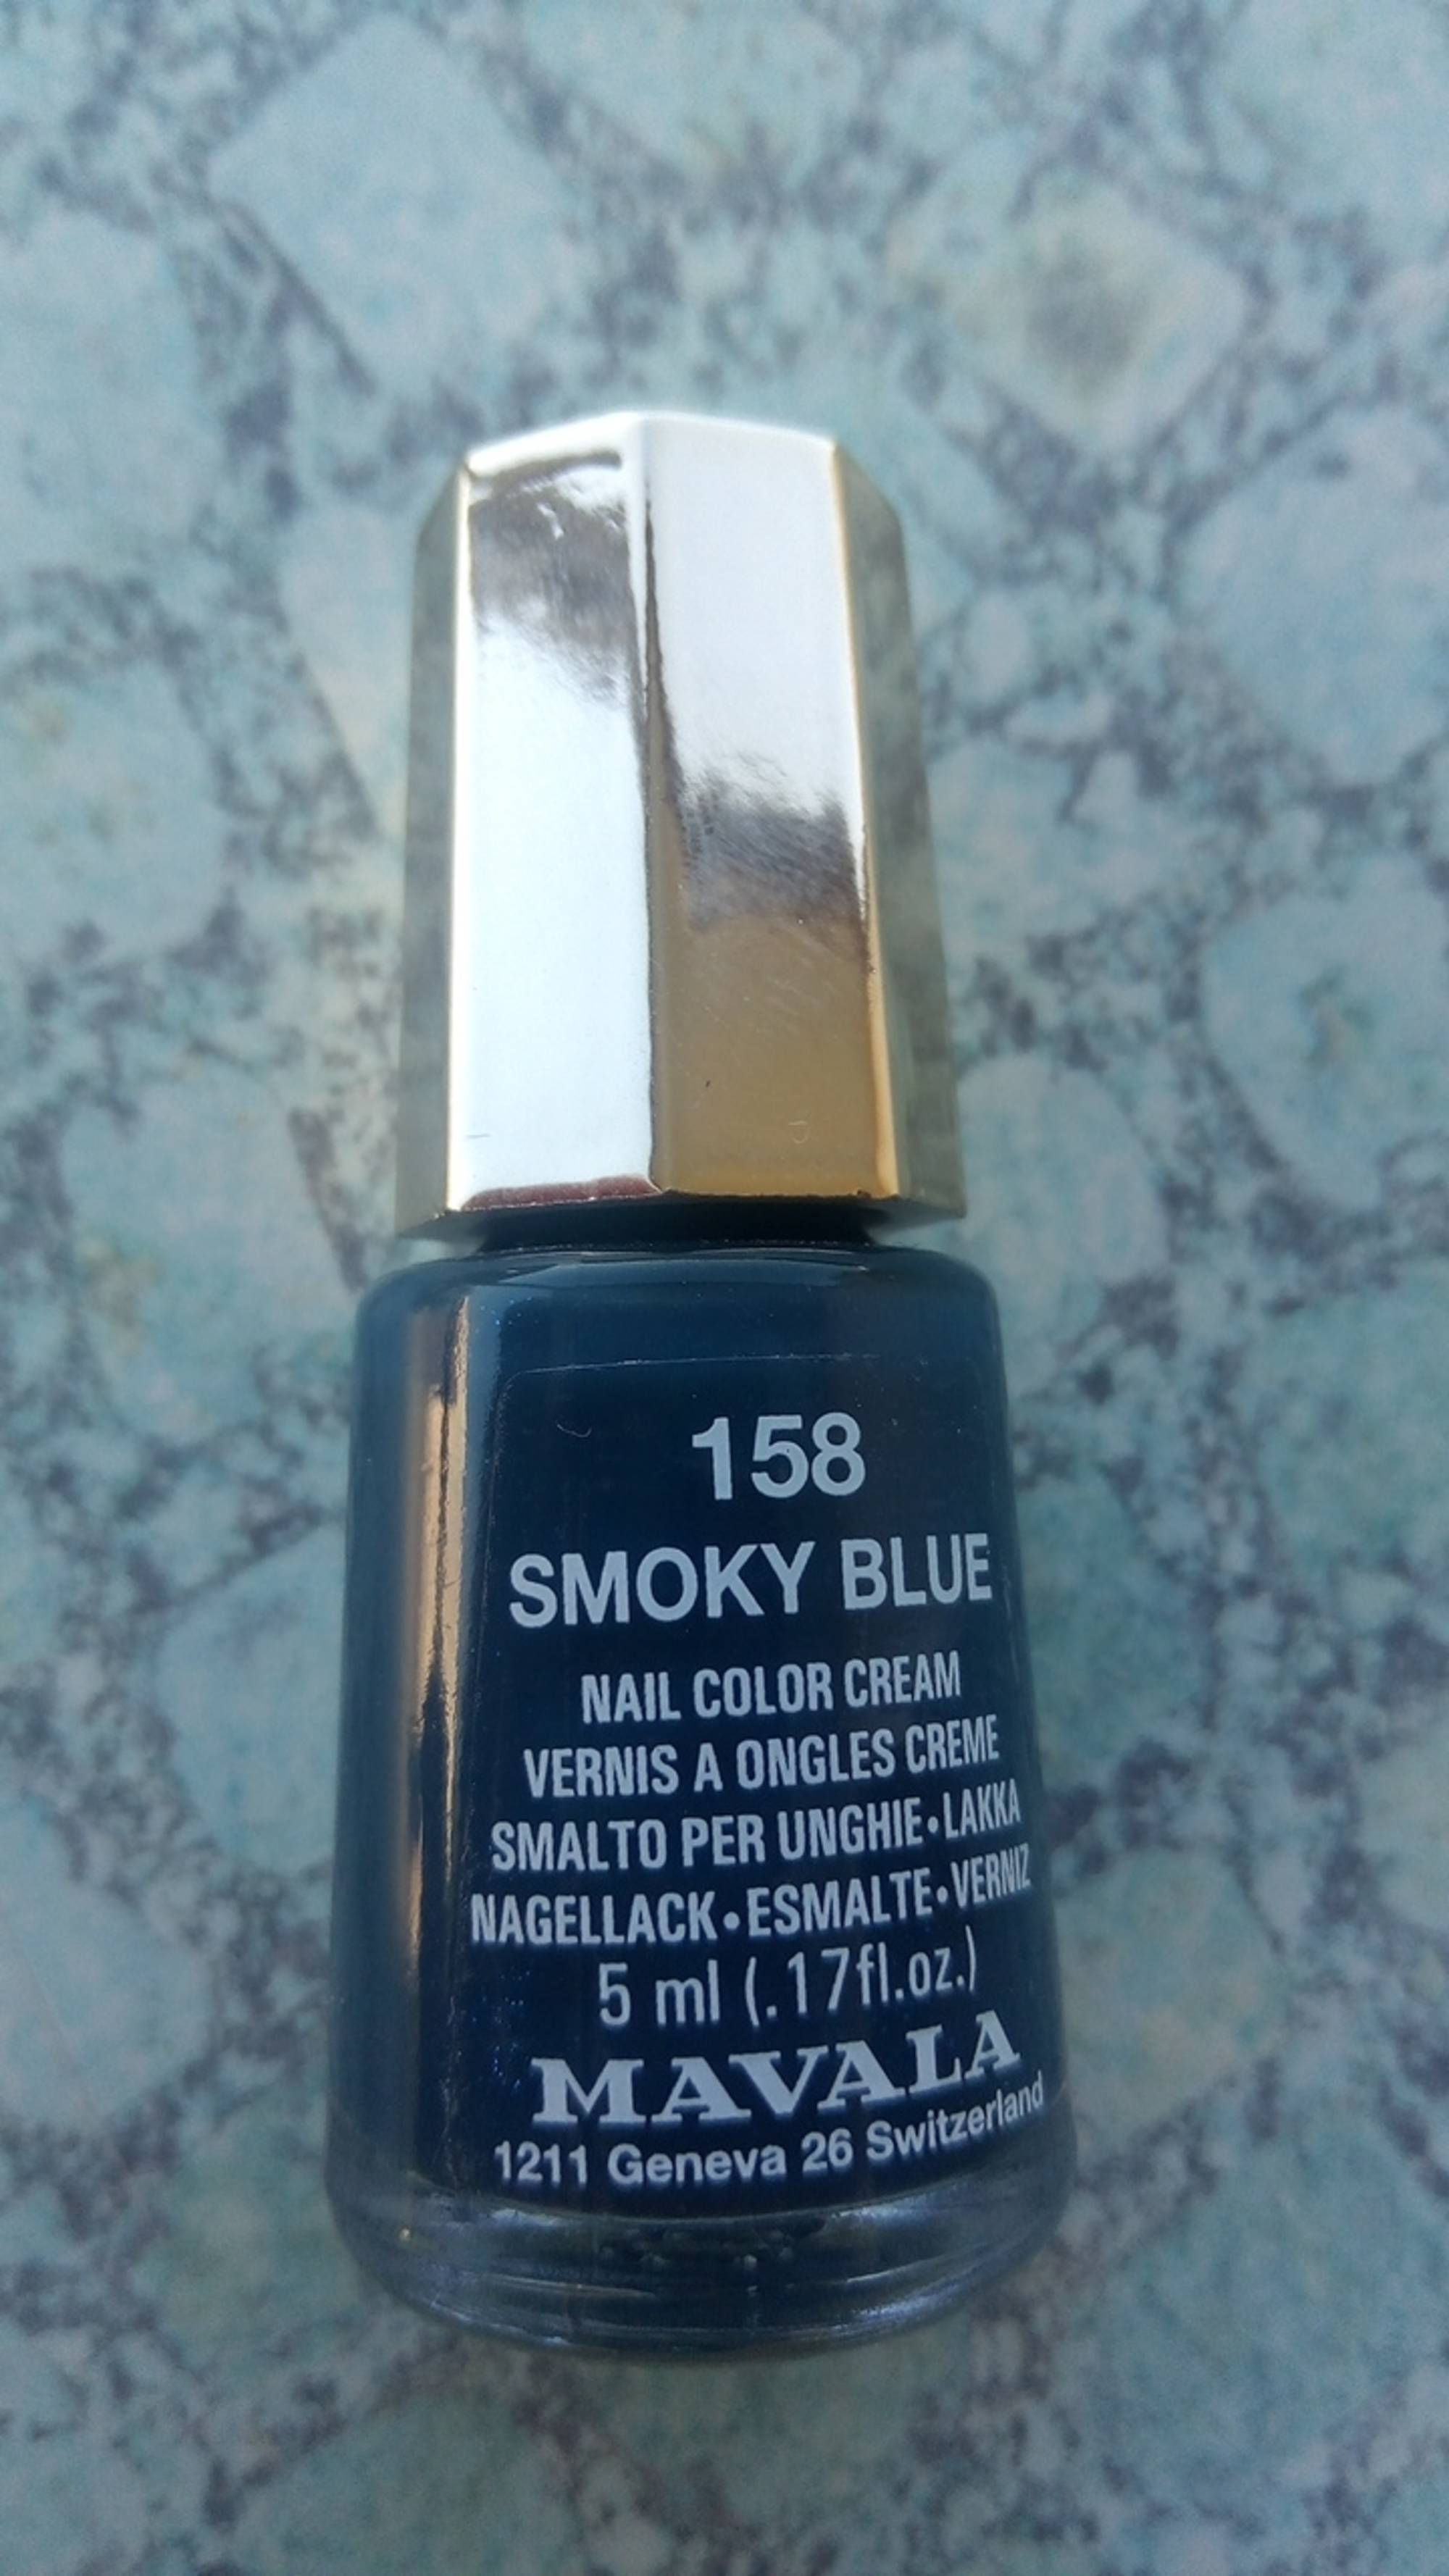 MAVALA - 158 smoky blue - Vernis à ongles crème